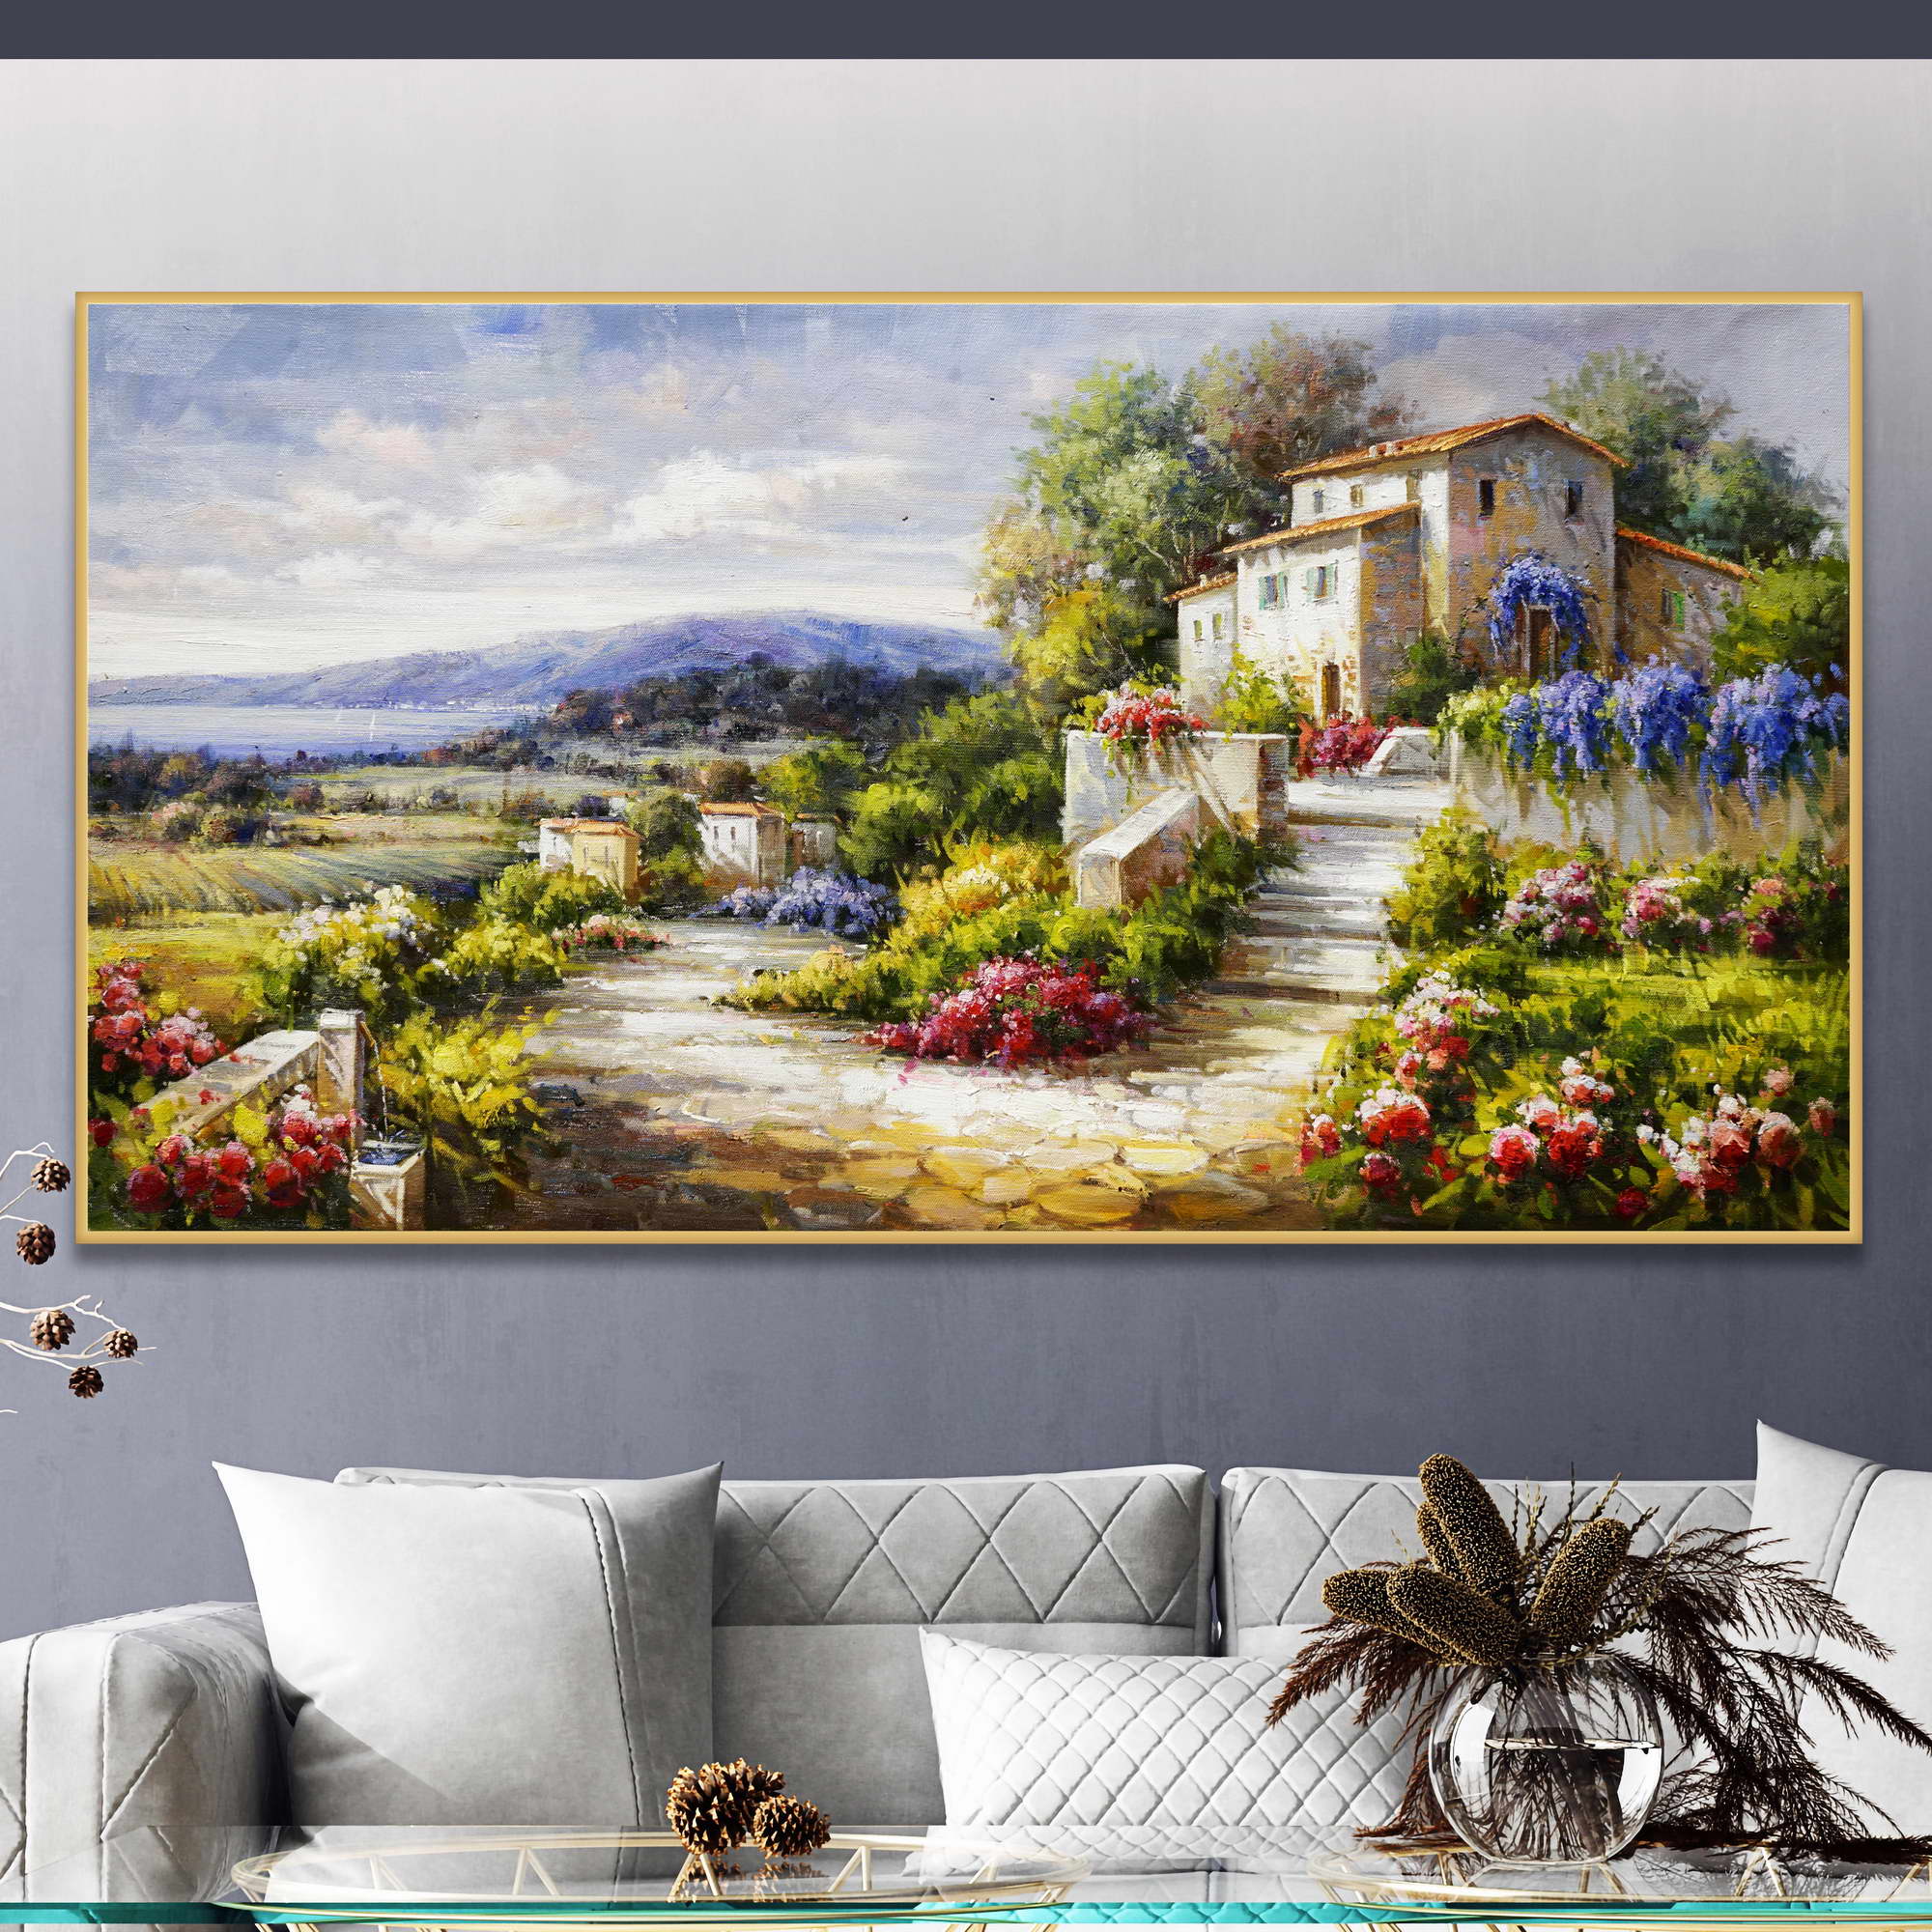 Dipinto di una villa toscana con giardino di fiori